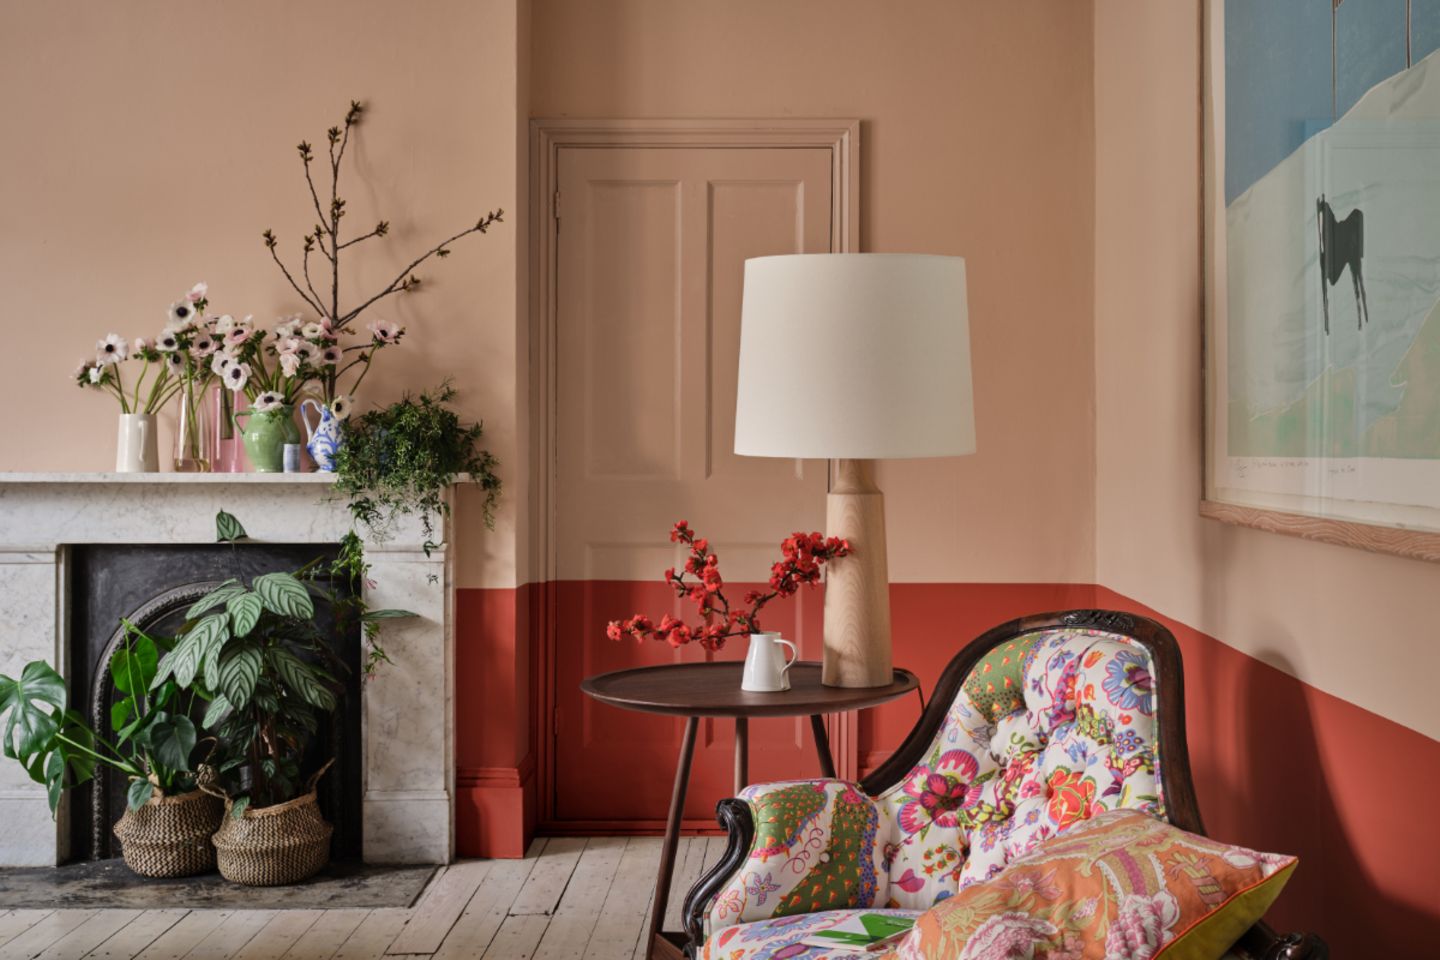 Wohnzimmer mit halbhoch gestrichener Wand in orange-rot und Nudeton